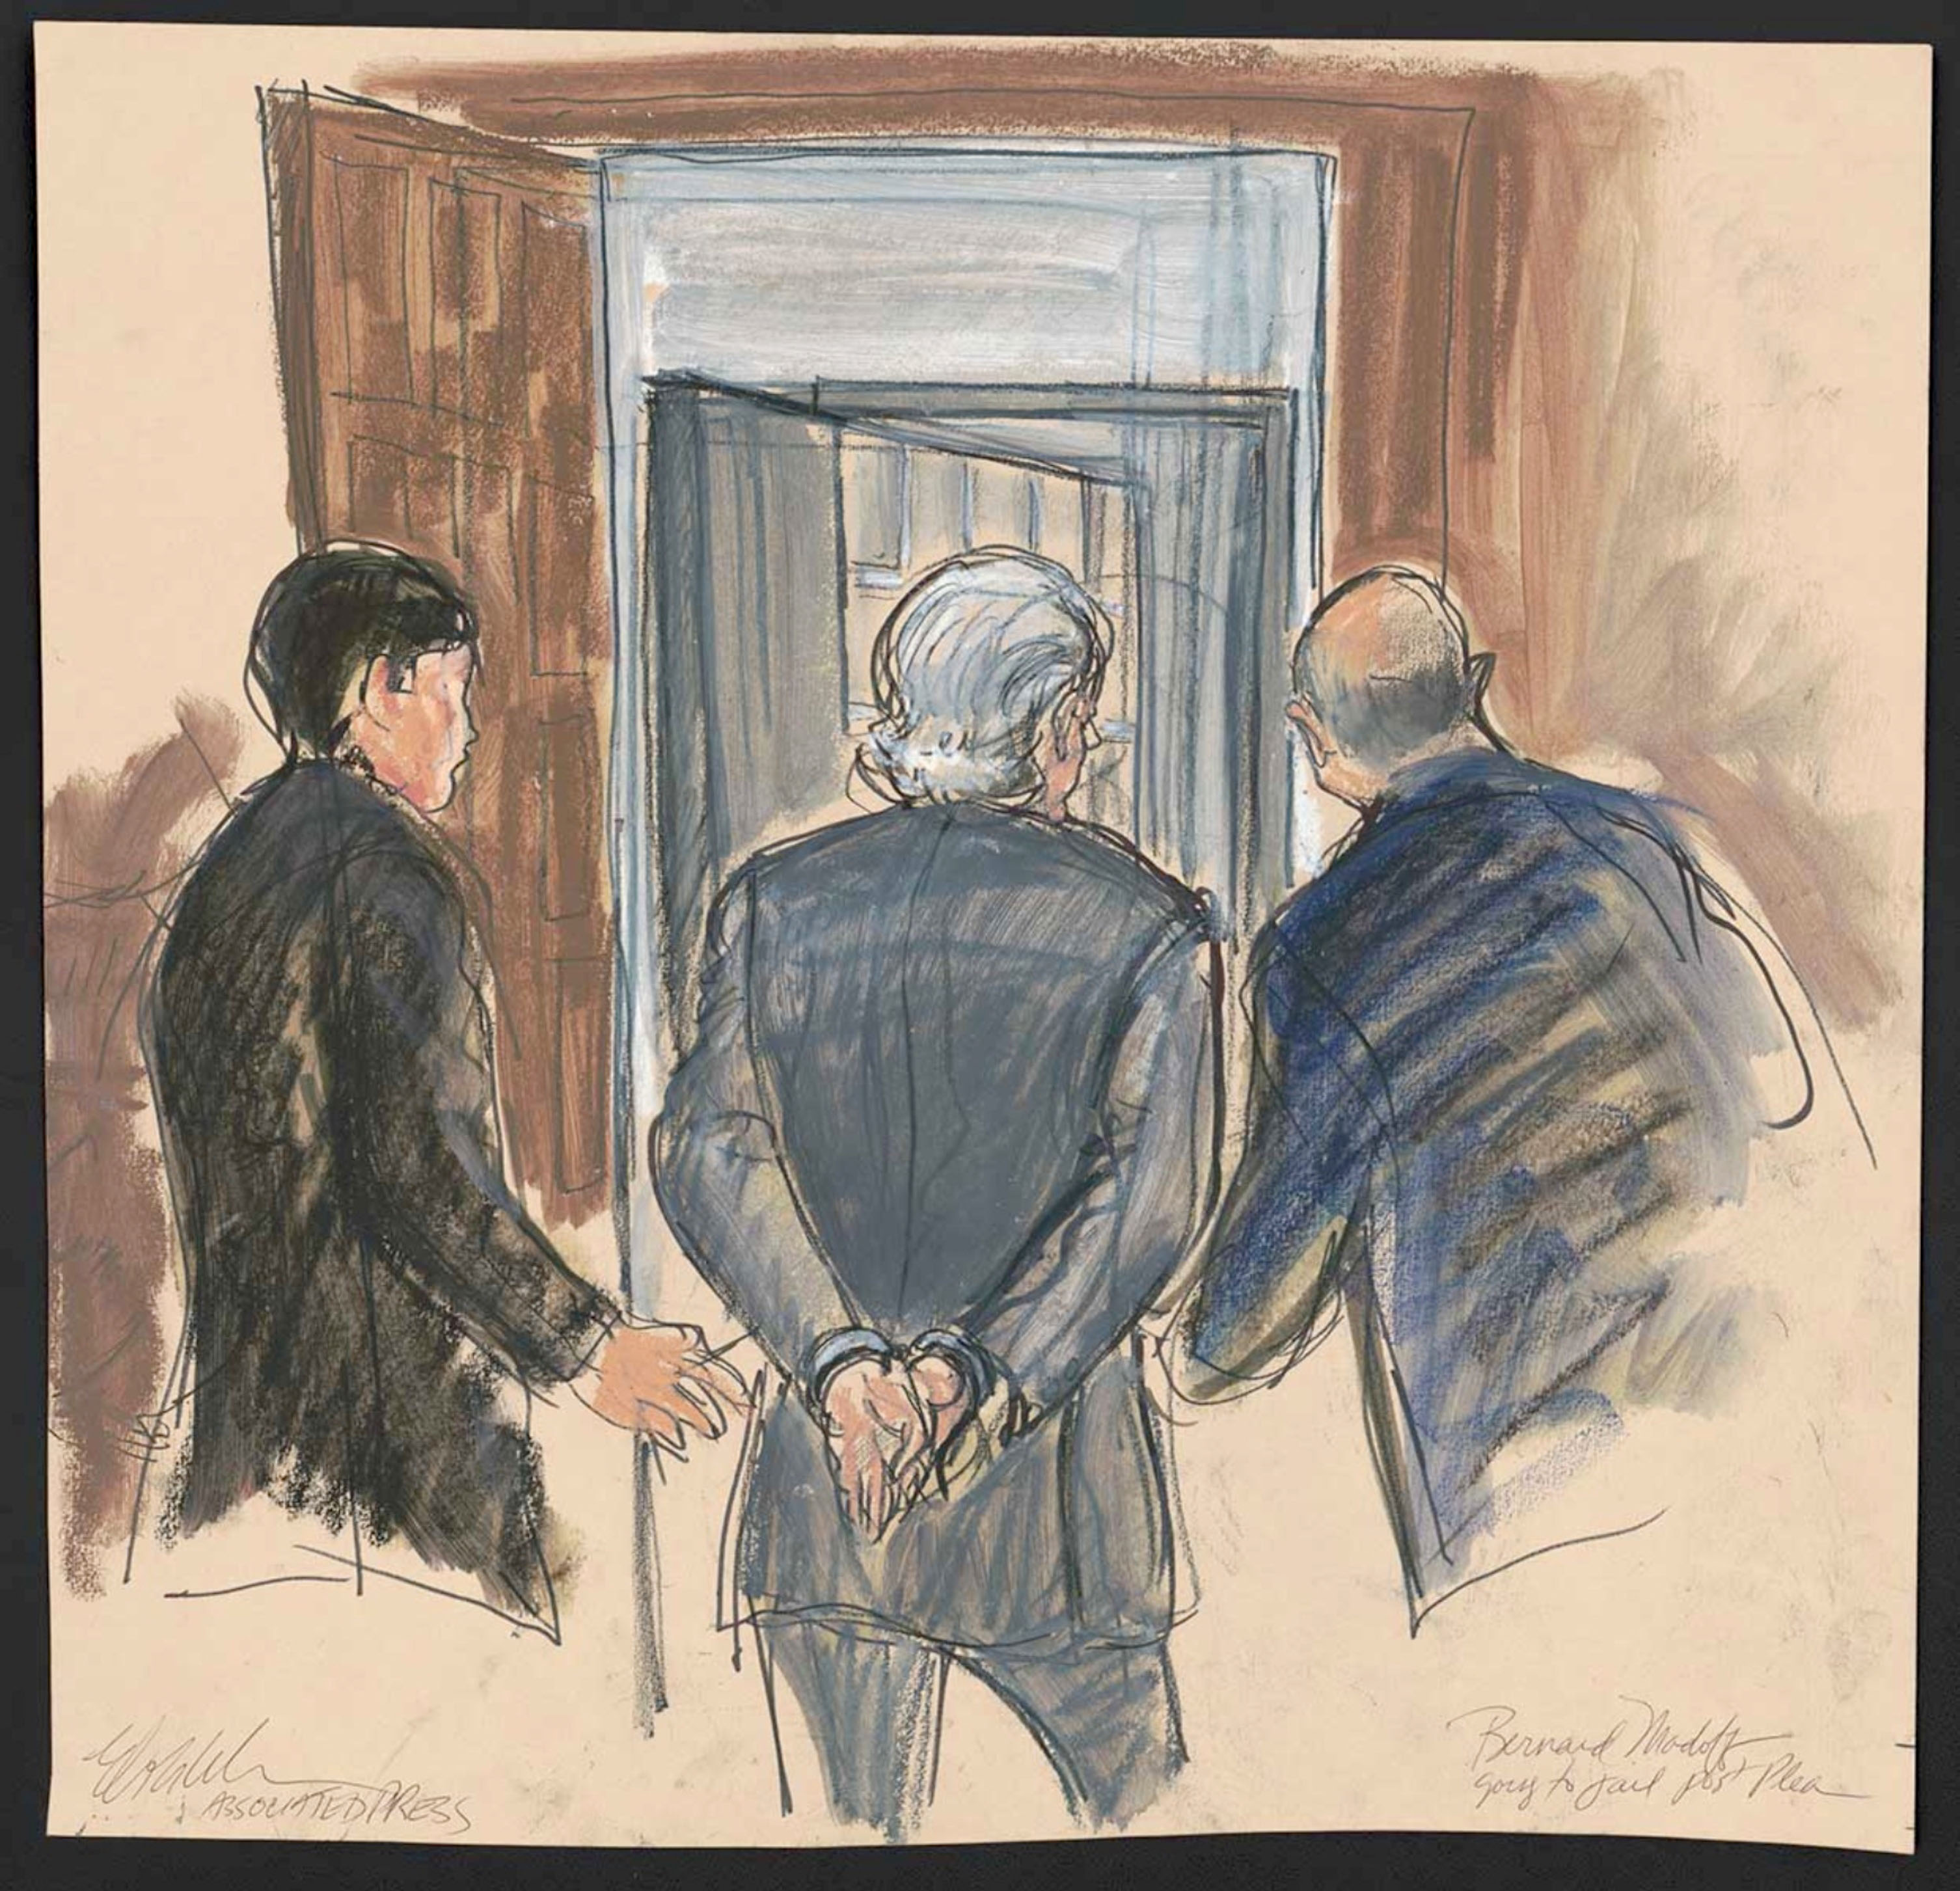 Elizabeth Williams: Bernard Madoff yendo a la cárcel, 12 de marzo de 2009.